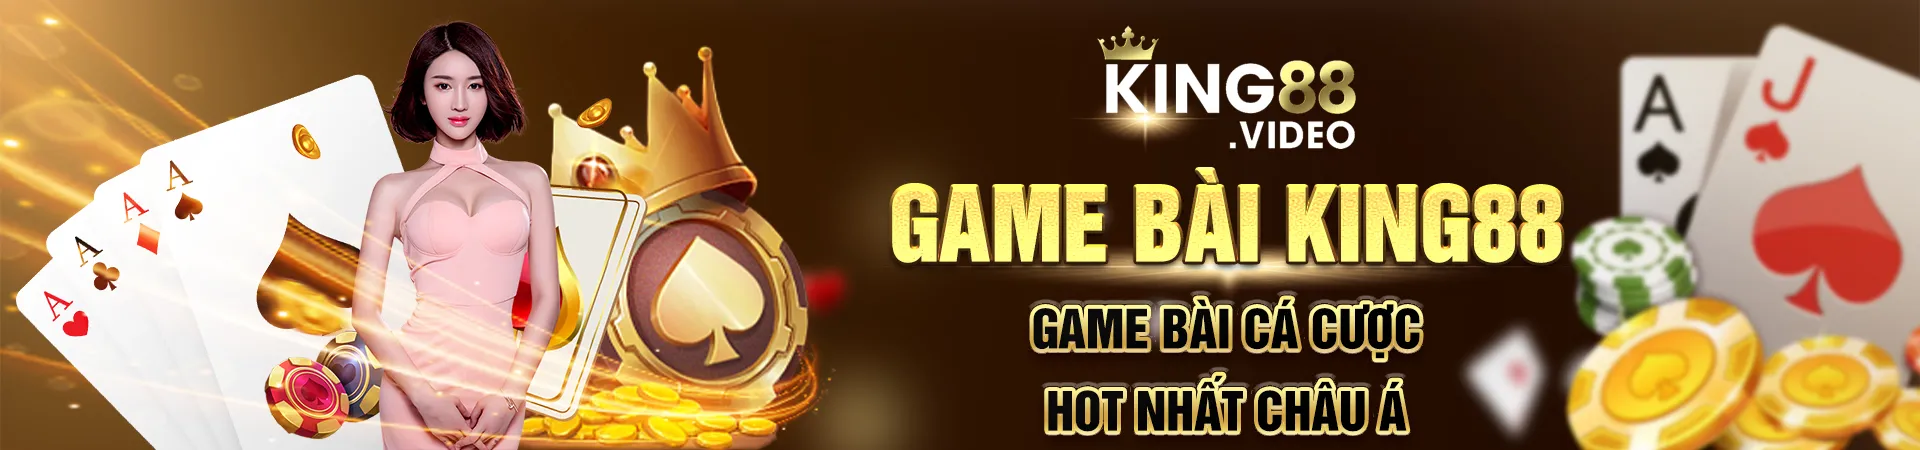 game bai king88